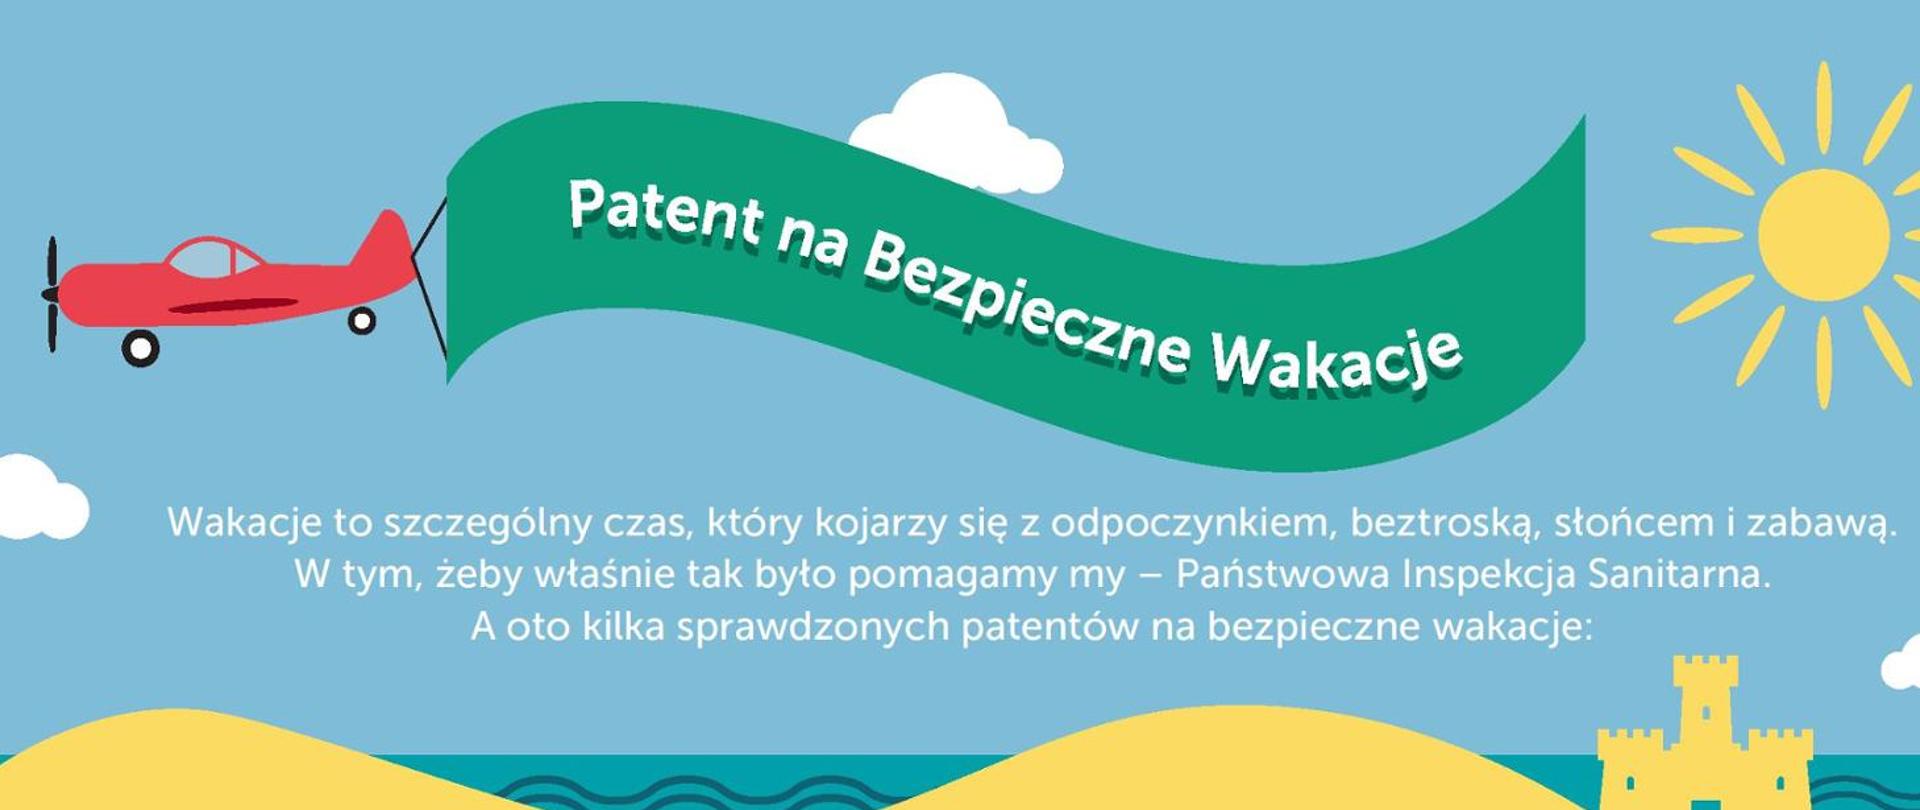 Patent na bezpieczne wakacje